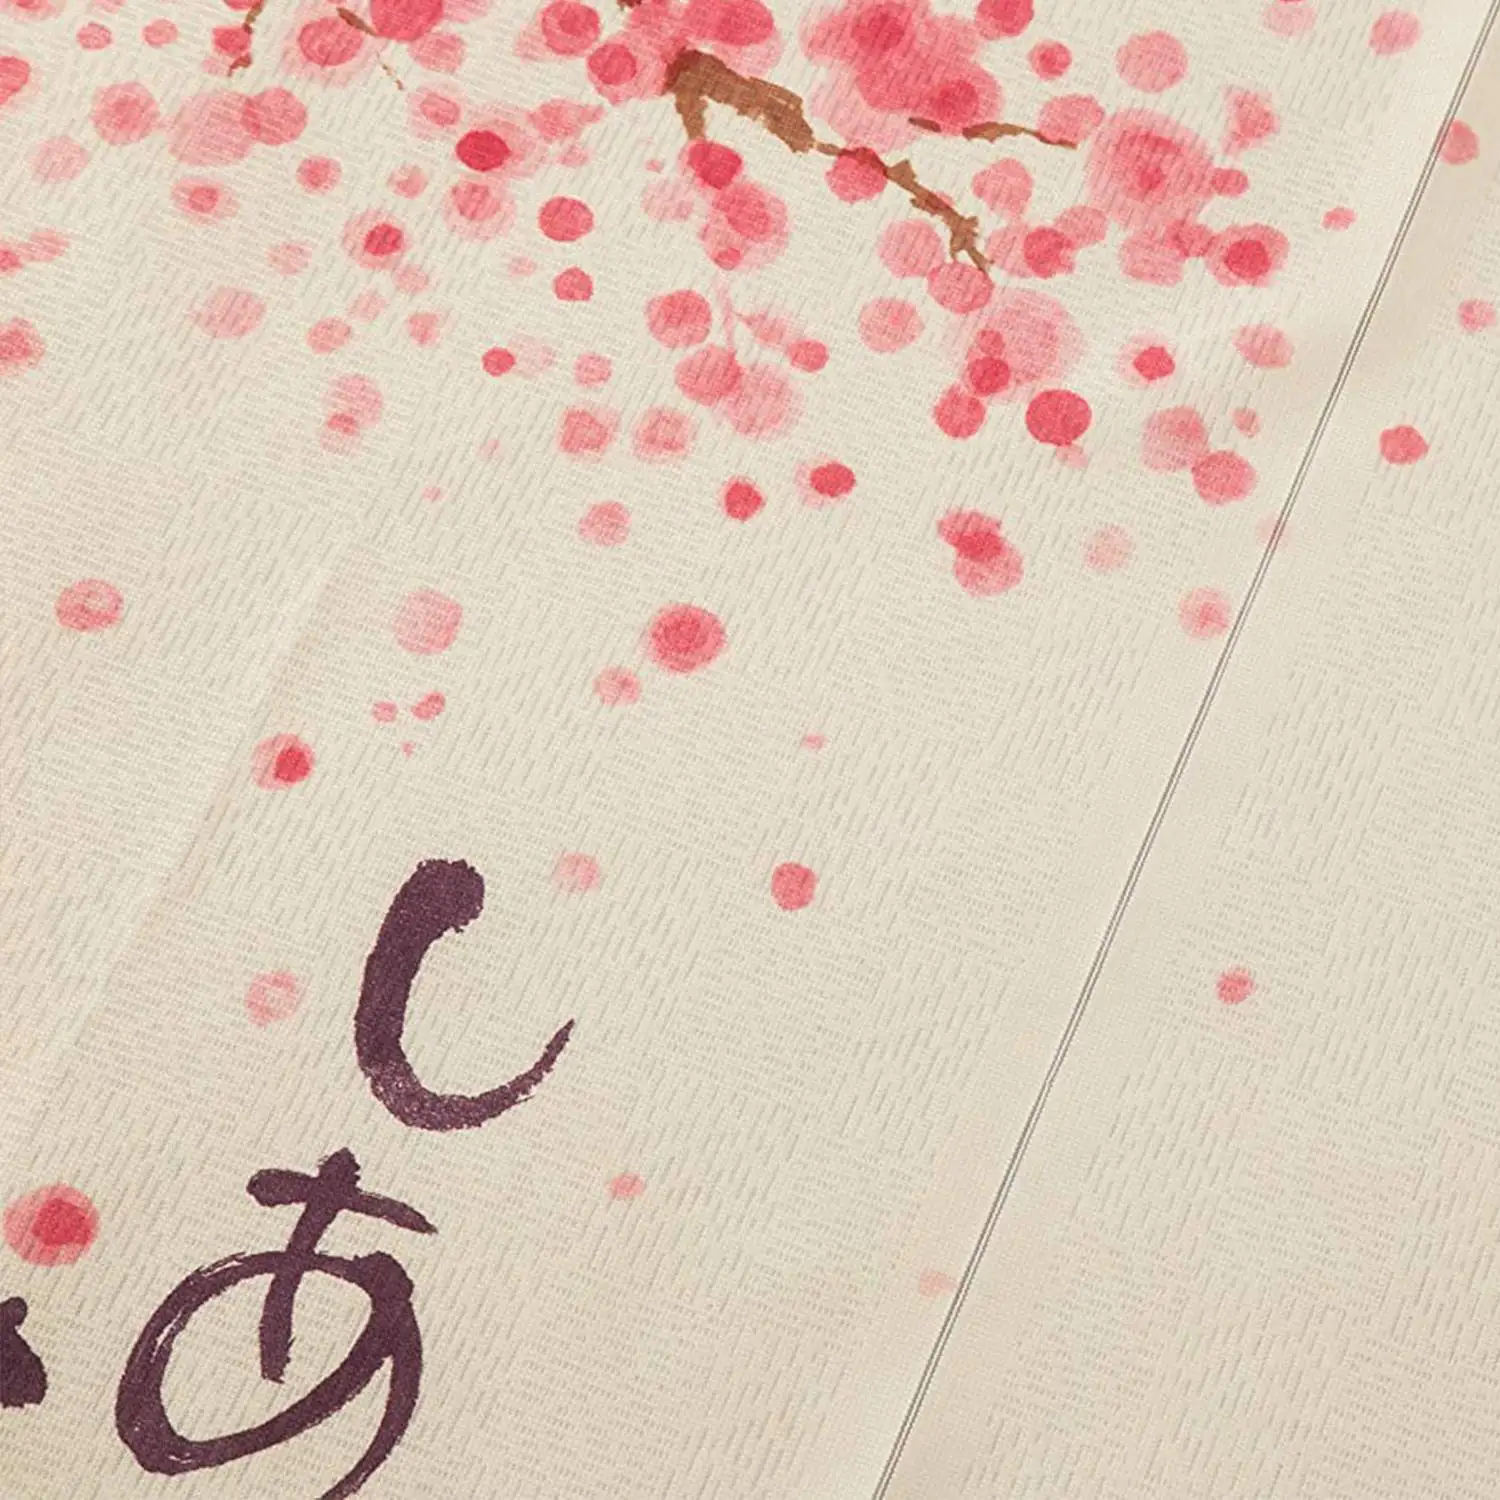 Дверная занавеска в японском стиле 85X150 см Happy Dogs Cherry Blossom